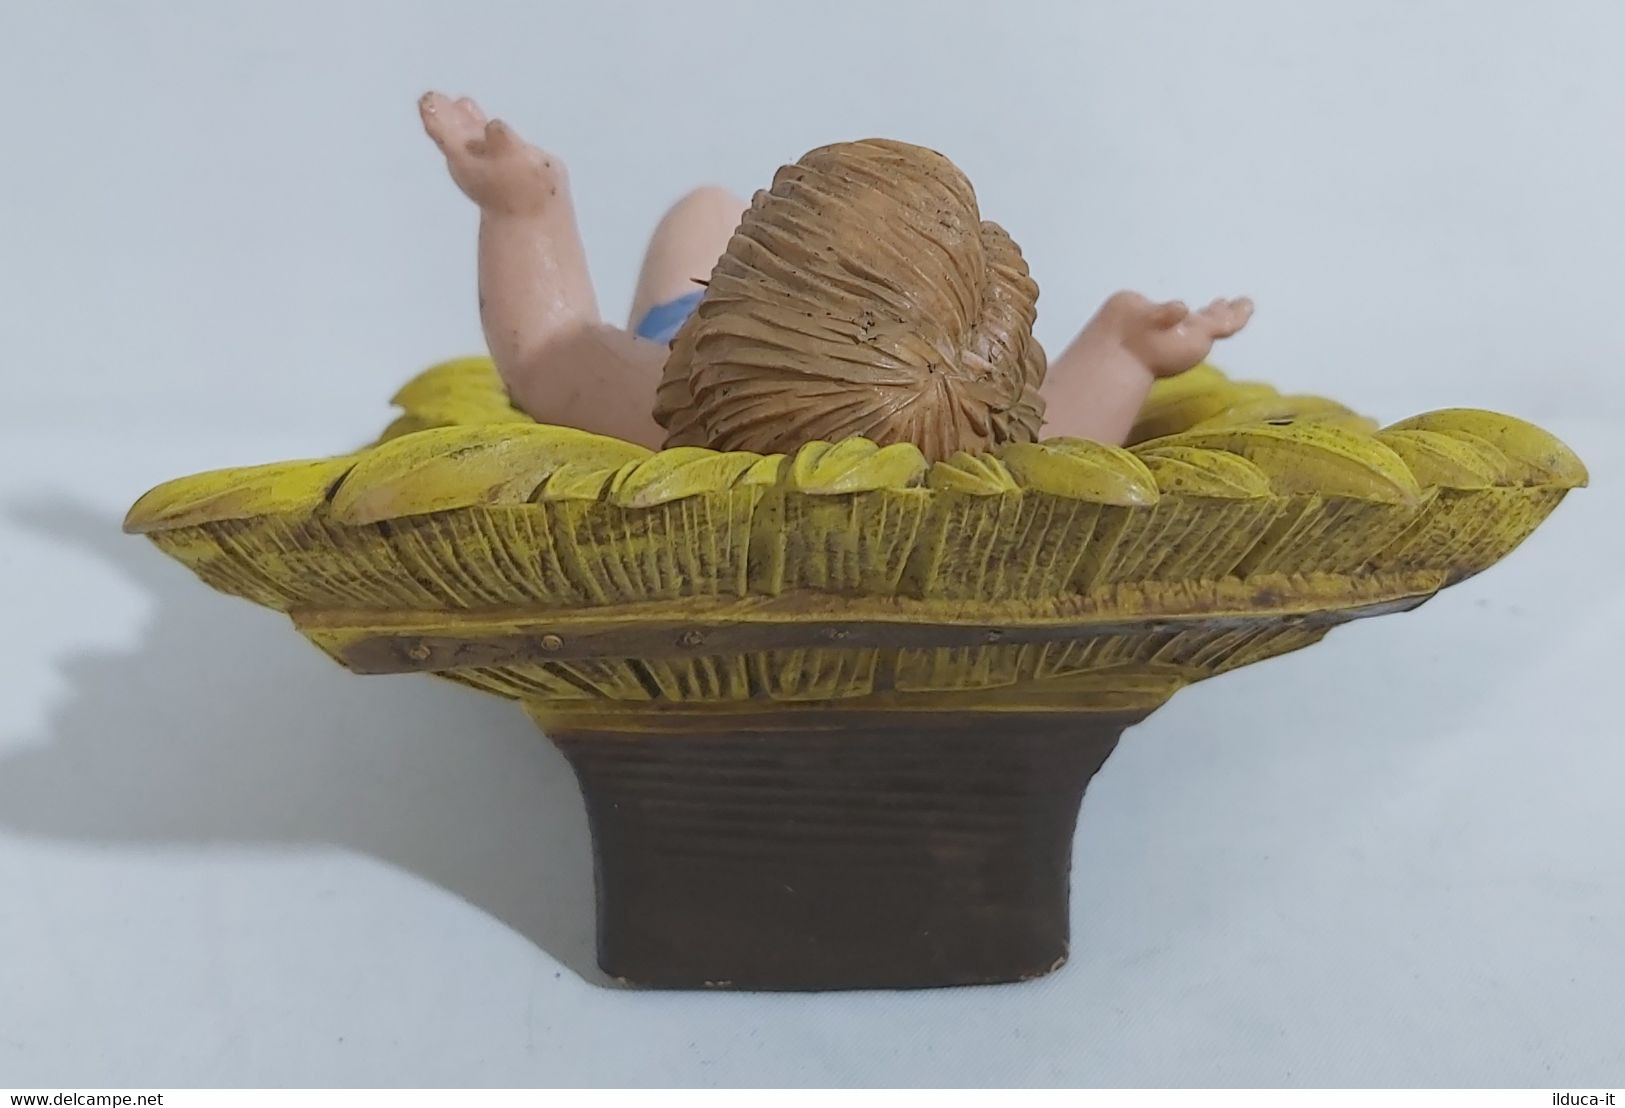 44360 Pastorello Presepe - Statuina In Plastica - Gesù Bambino Con Culla - Crèches De Noël